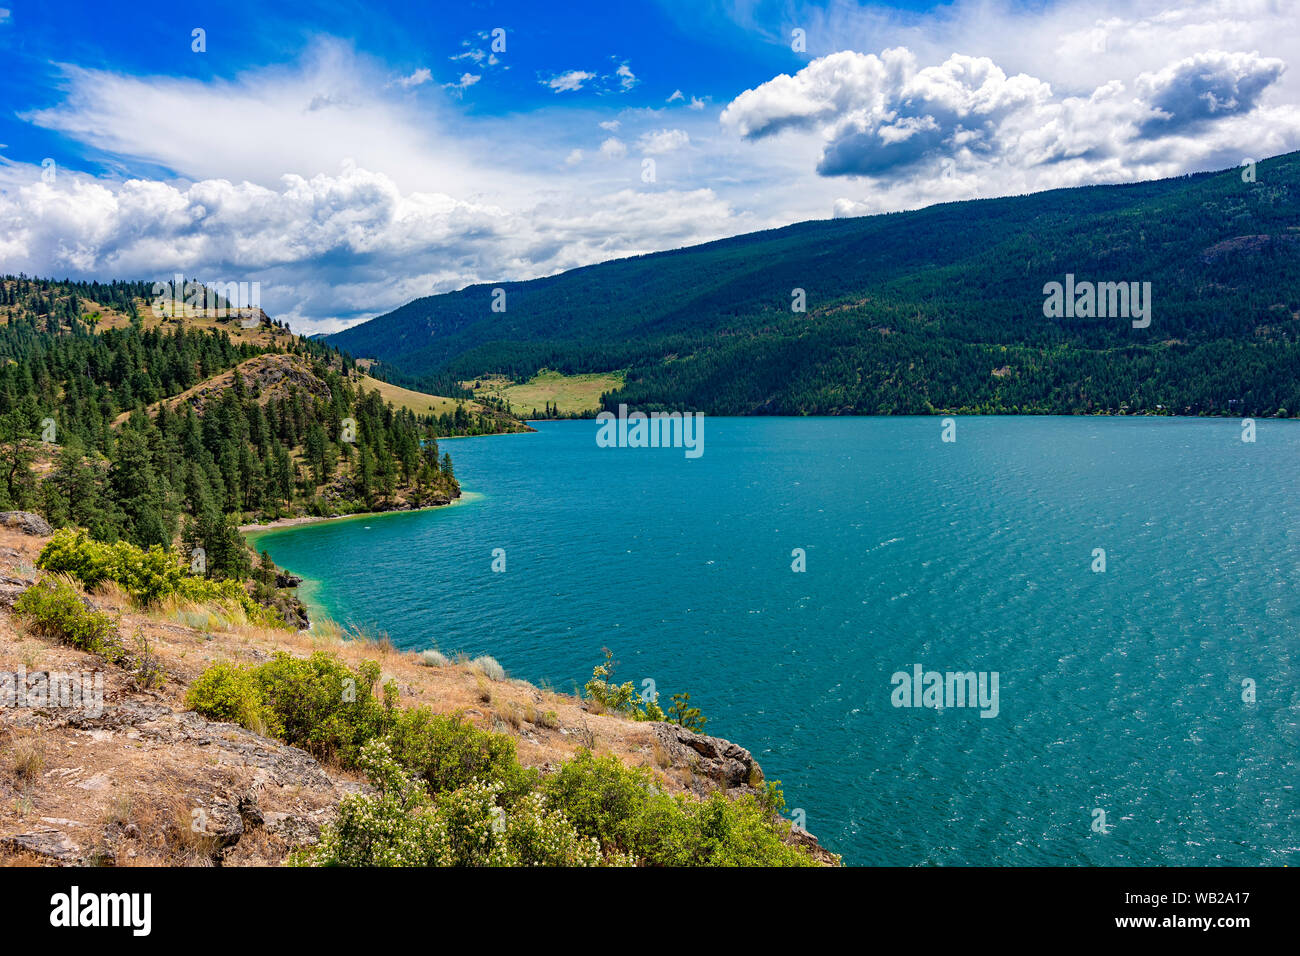 View of Kalamalka Lake from Kalamalka Lake Provinial Park near Vernon British Columbia Canada on a summer day Stock Photo